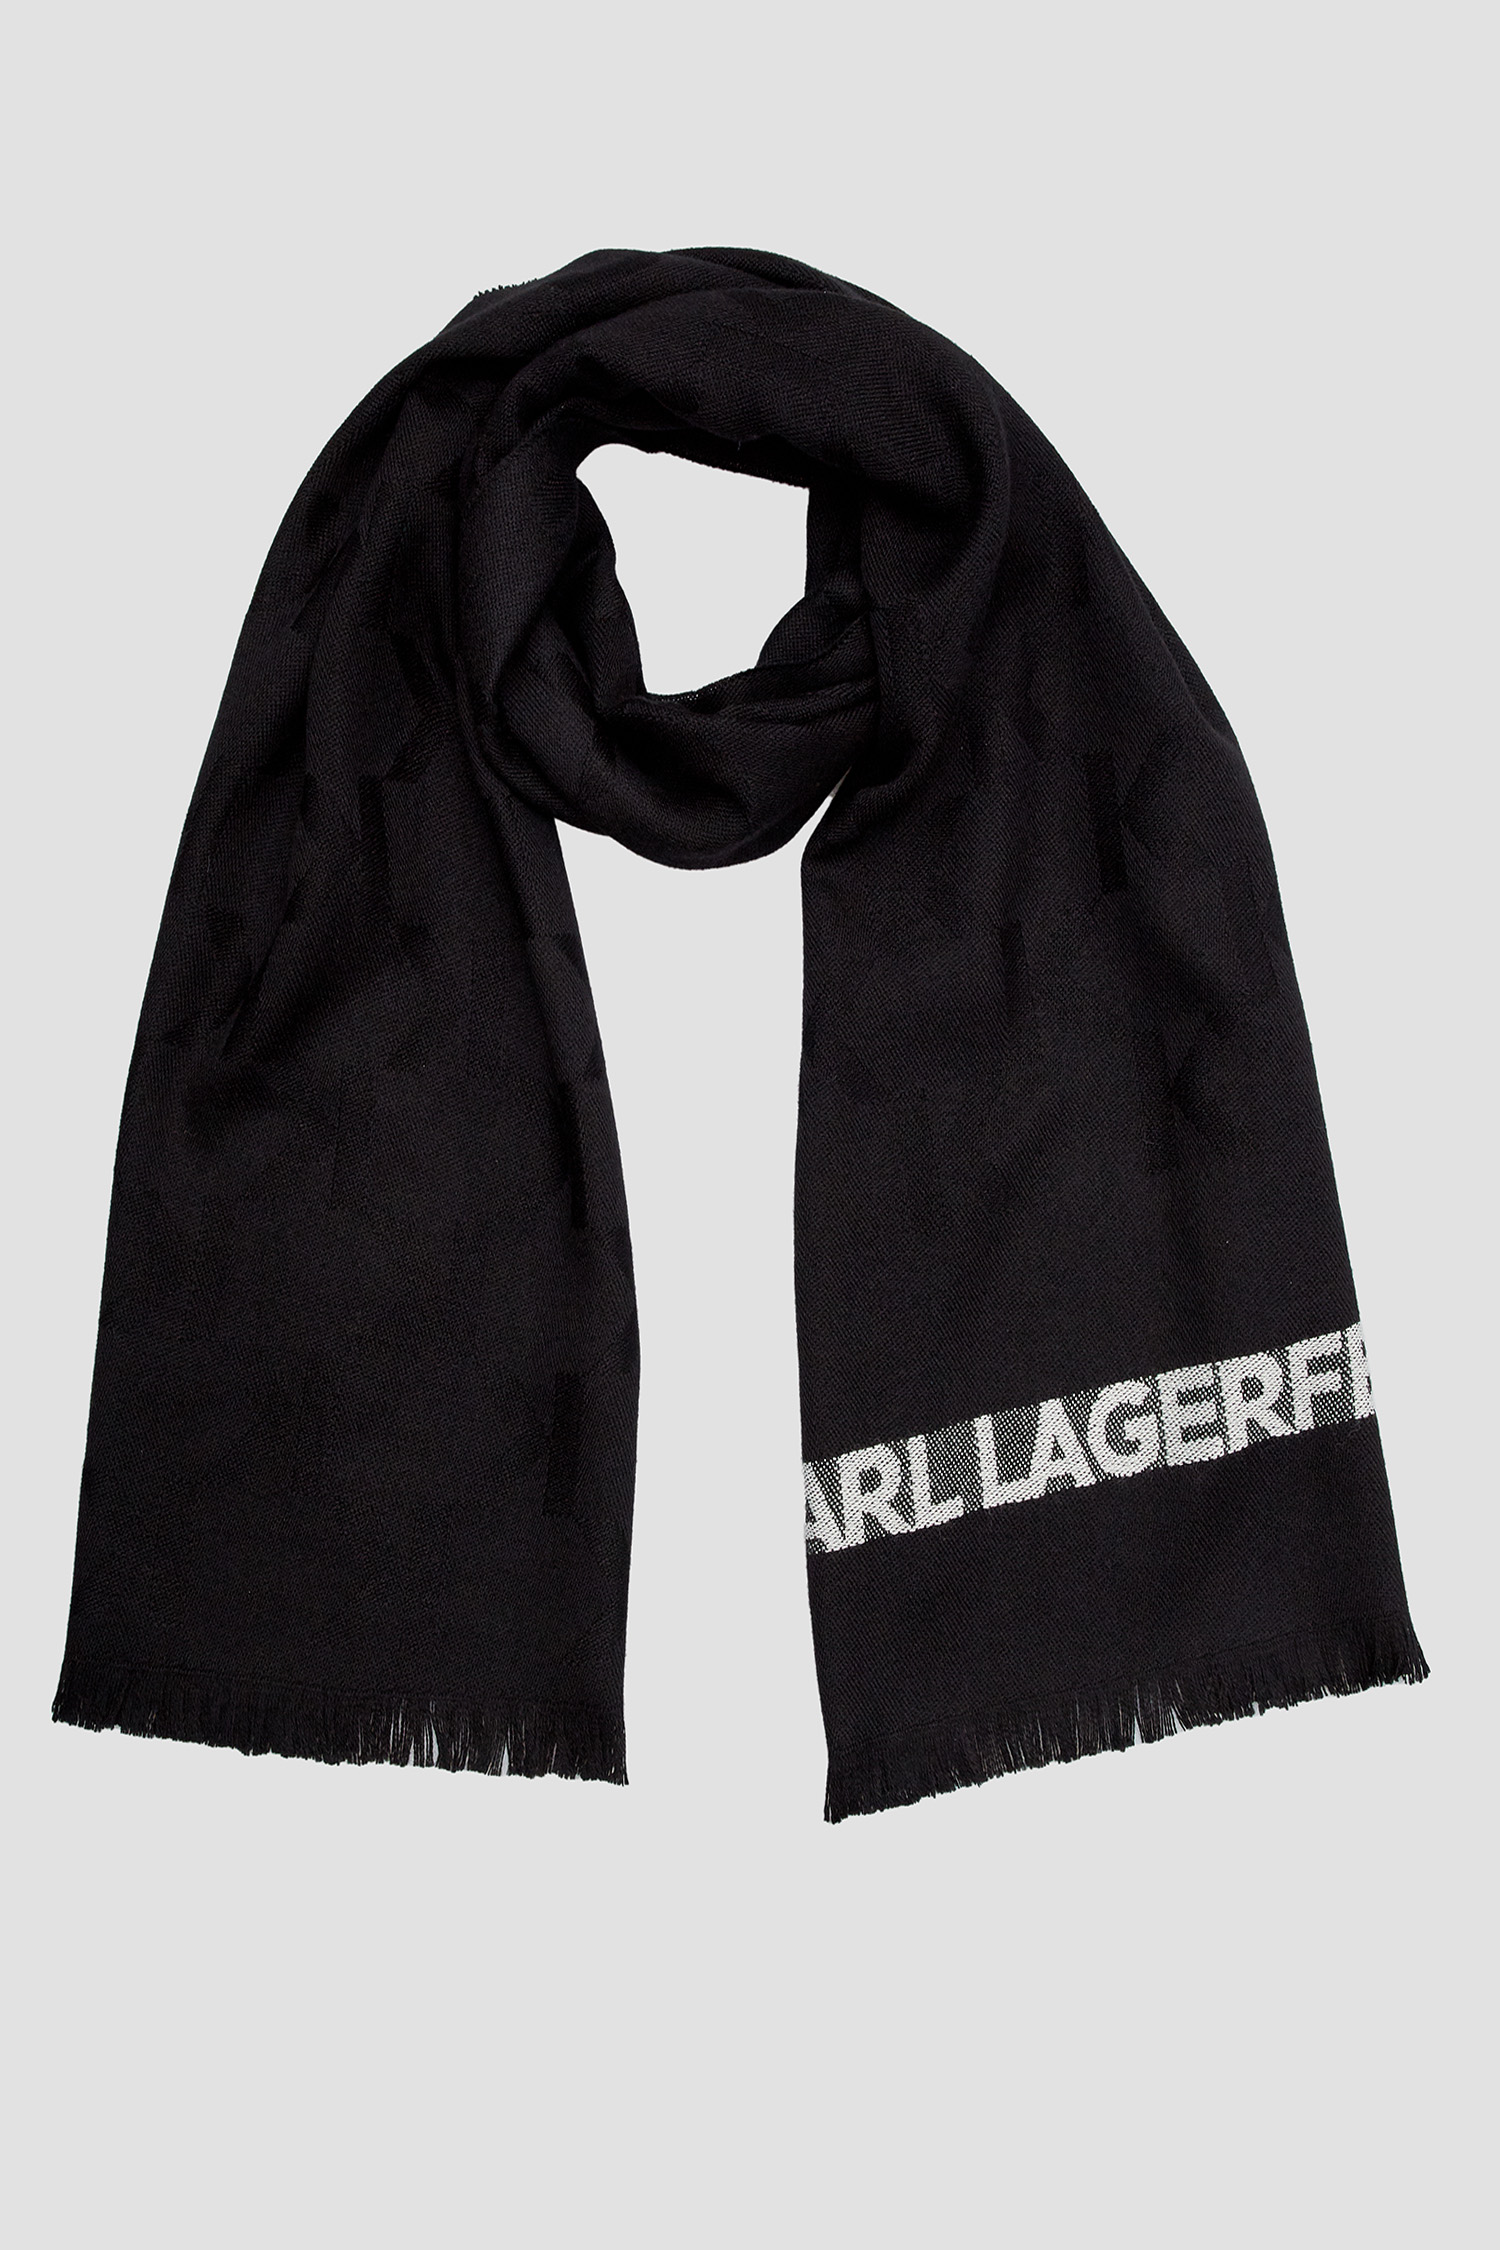 Чоловічий чорний вовняний шарф з візерунком Karl Lagerfeld 534135.805001;990